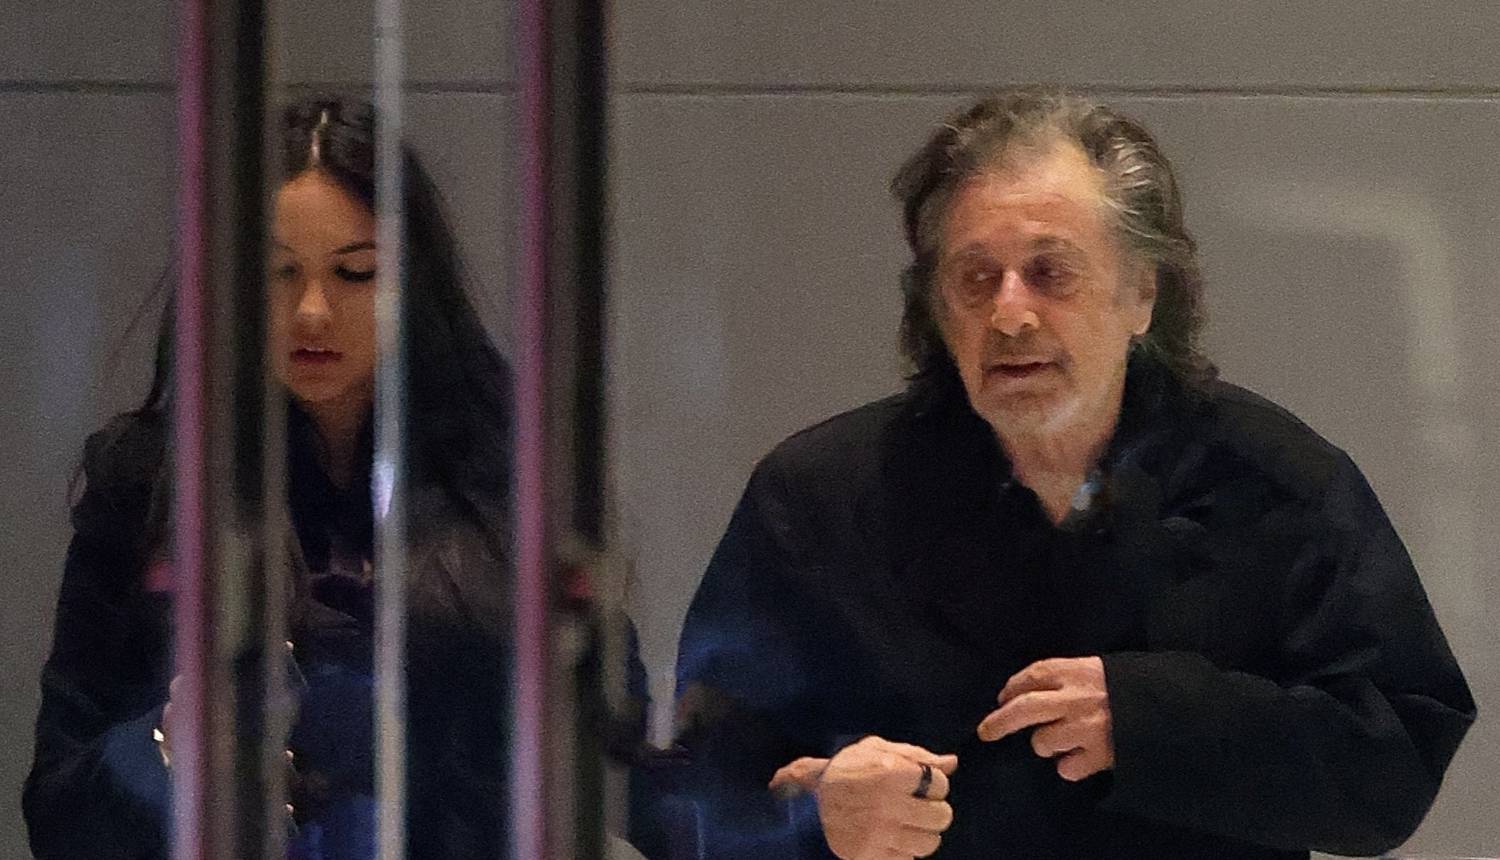 Al Pacino (83) provodi vrijeme družeći se s bivšom dok s 54 godine mlađom čeka dijete...